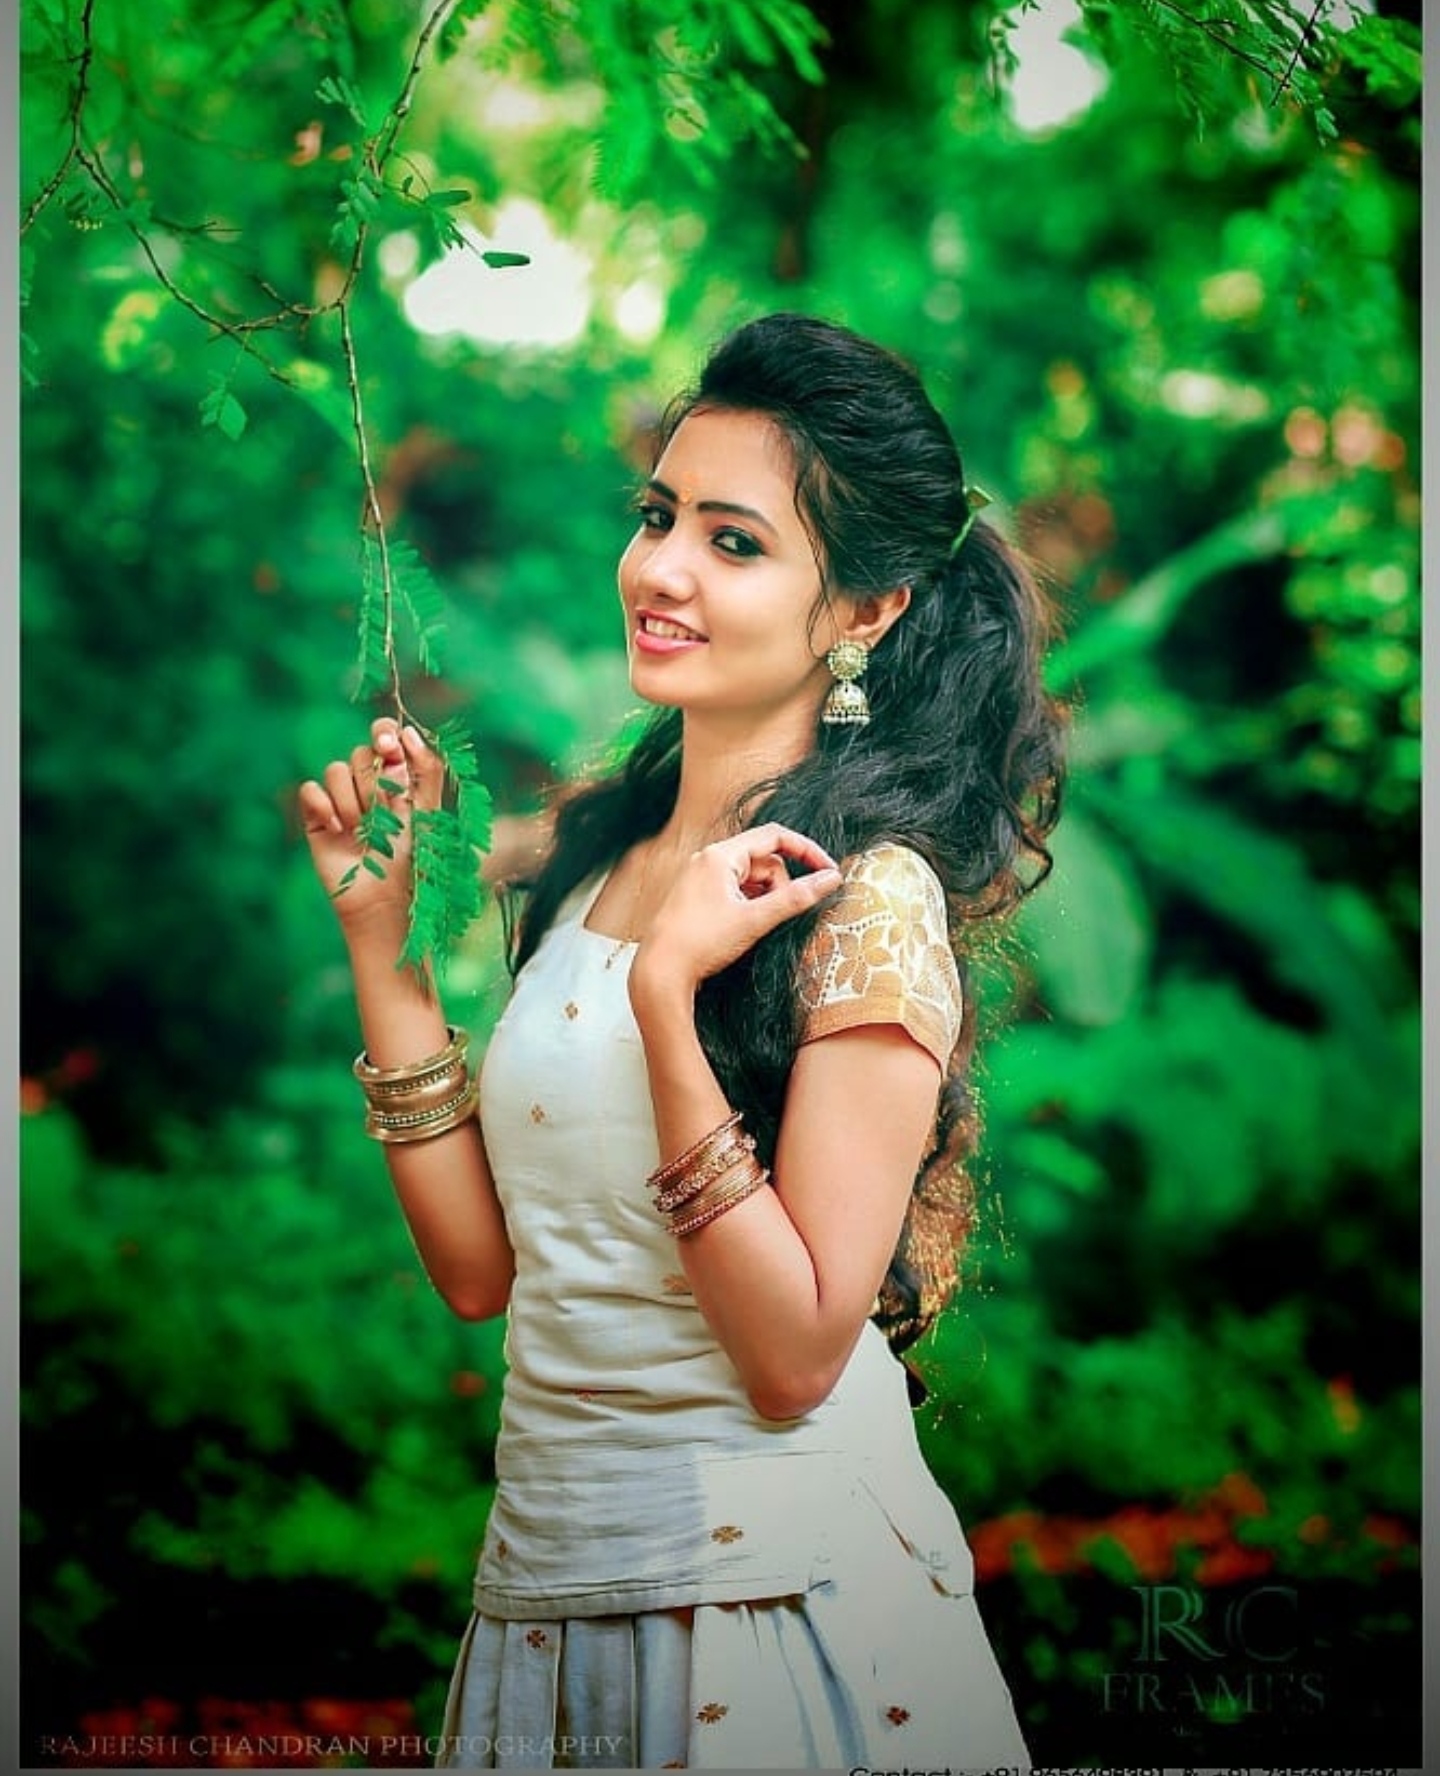 Meenakshi Meenakshi Laxman Mahendran - Meenakshi Laxman Mahendran , HD Wallpaper & Backgrounds